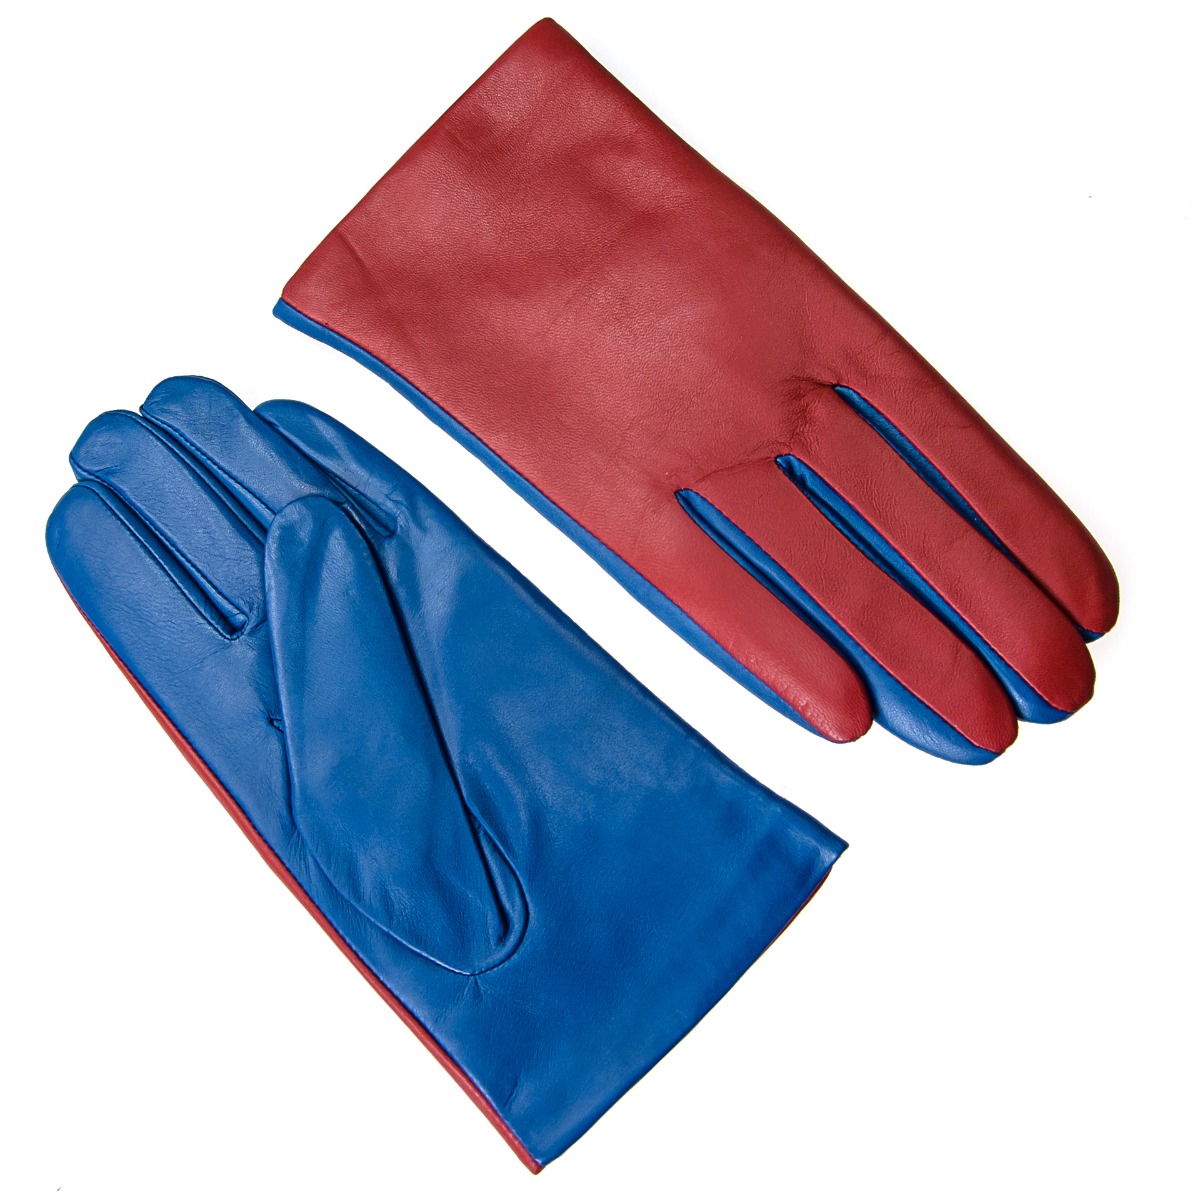 czerwono-niebieskie rękawiczki skórzane - Allora zdjęcie 2